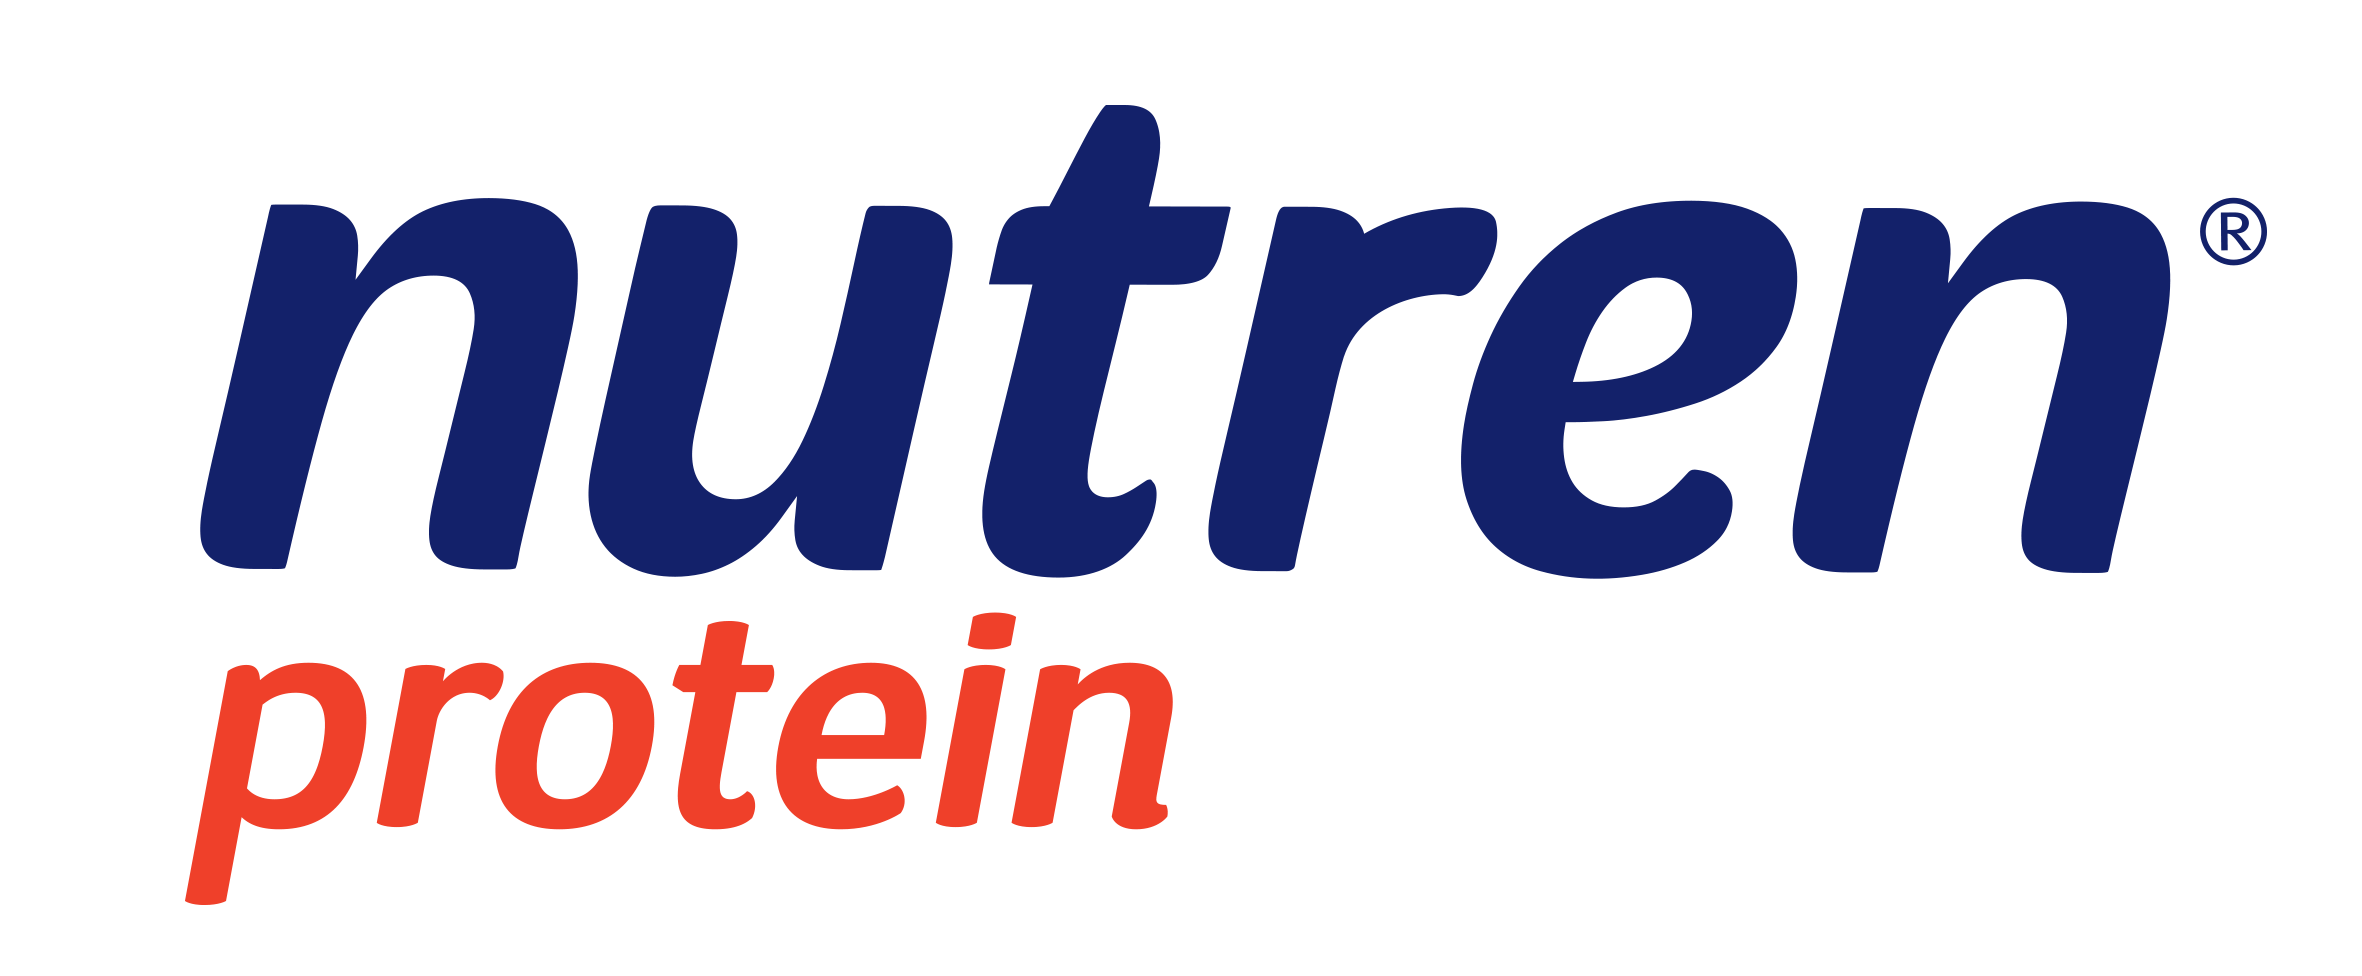 nutren-protein-logo